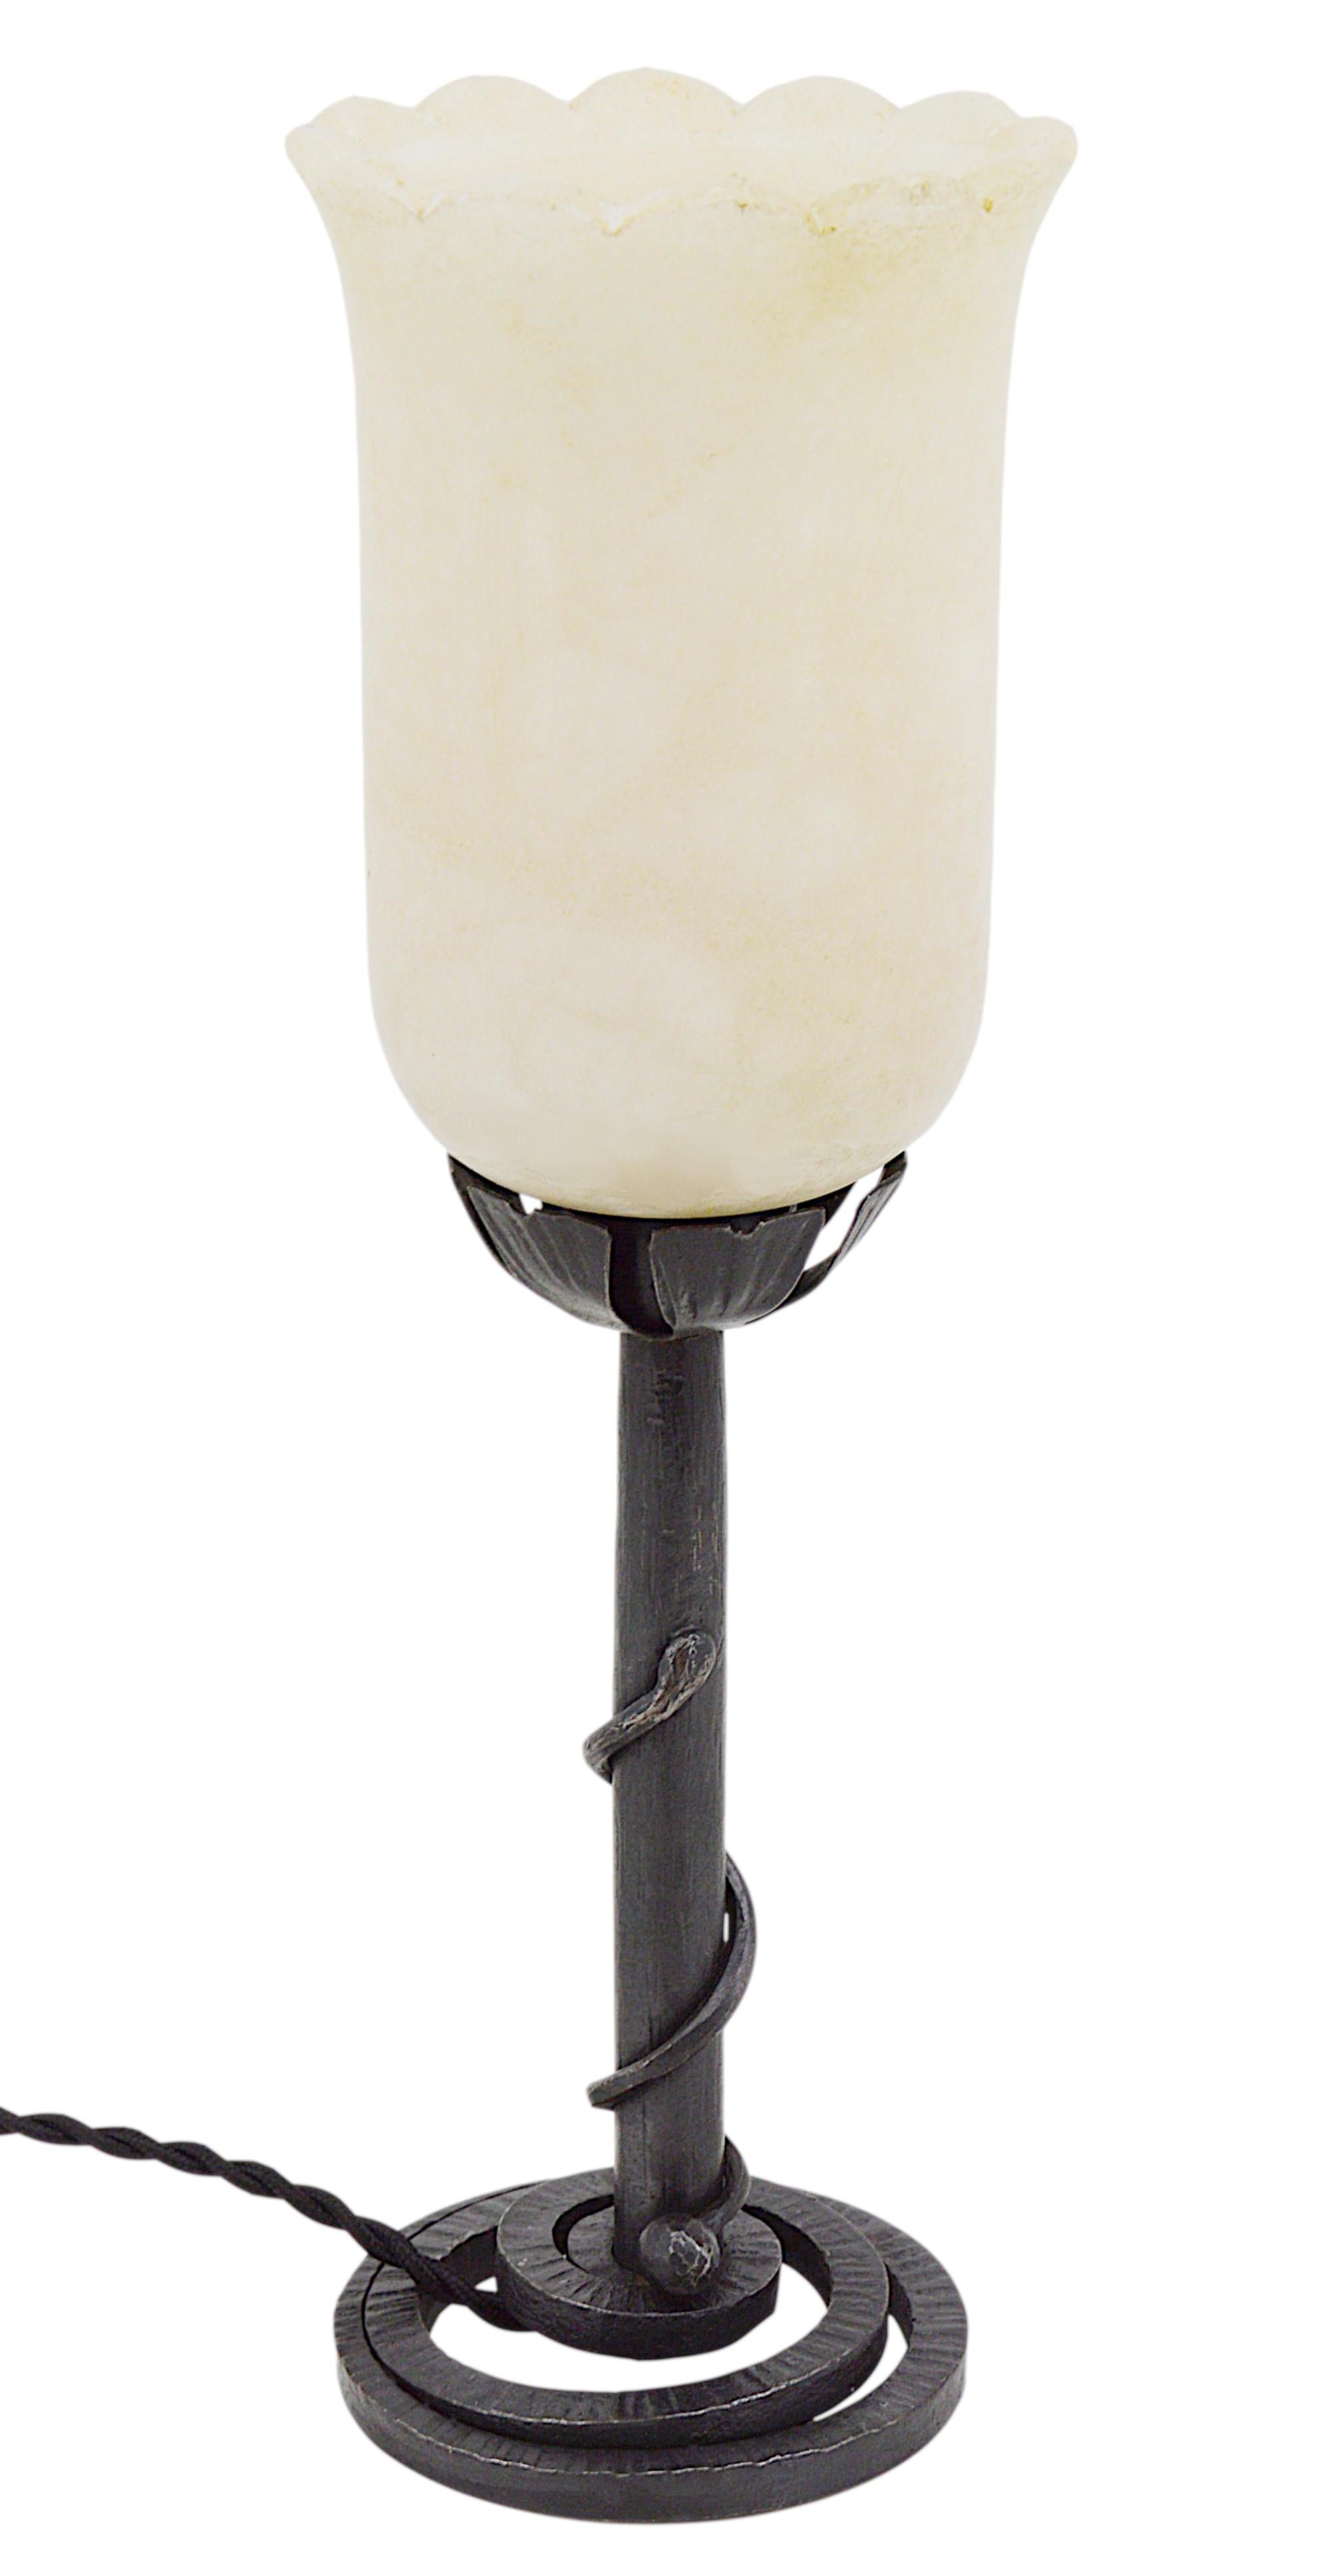 Französische Art-Déco-Tischlampe, Frankreich, 1920er Jahre. Stilvoller modernistischer Alabasterschirm auf einem schmiedeeisernen Sockel, der eine Schlange symbolisiert. Der Sockel ist mit 